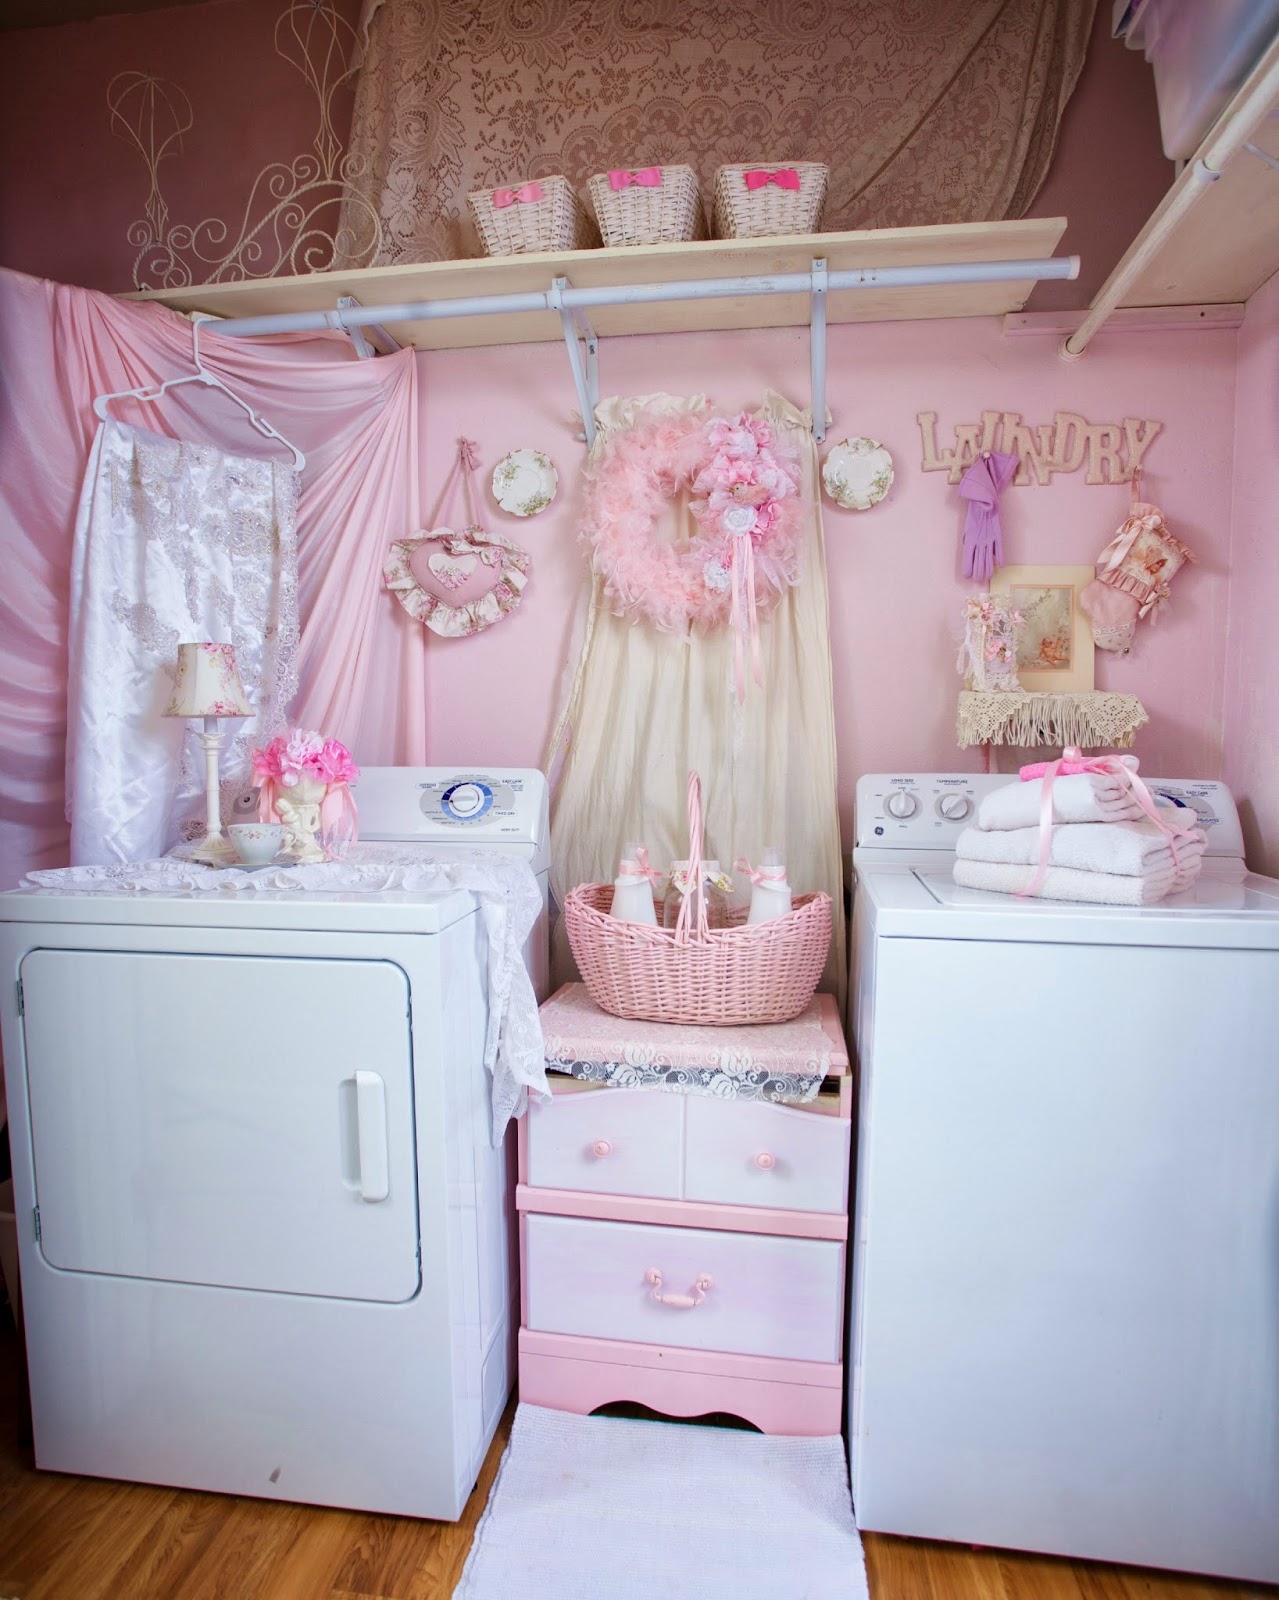 28 baby fresh laundry rooms homebnc.jpg